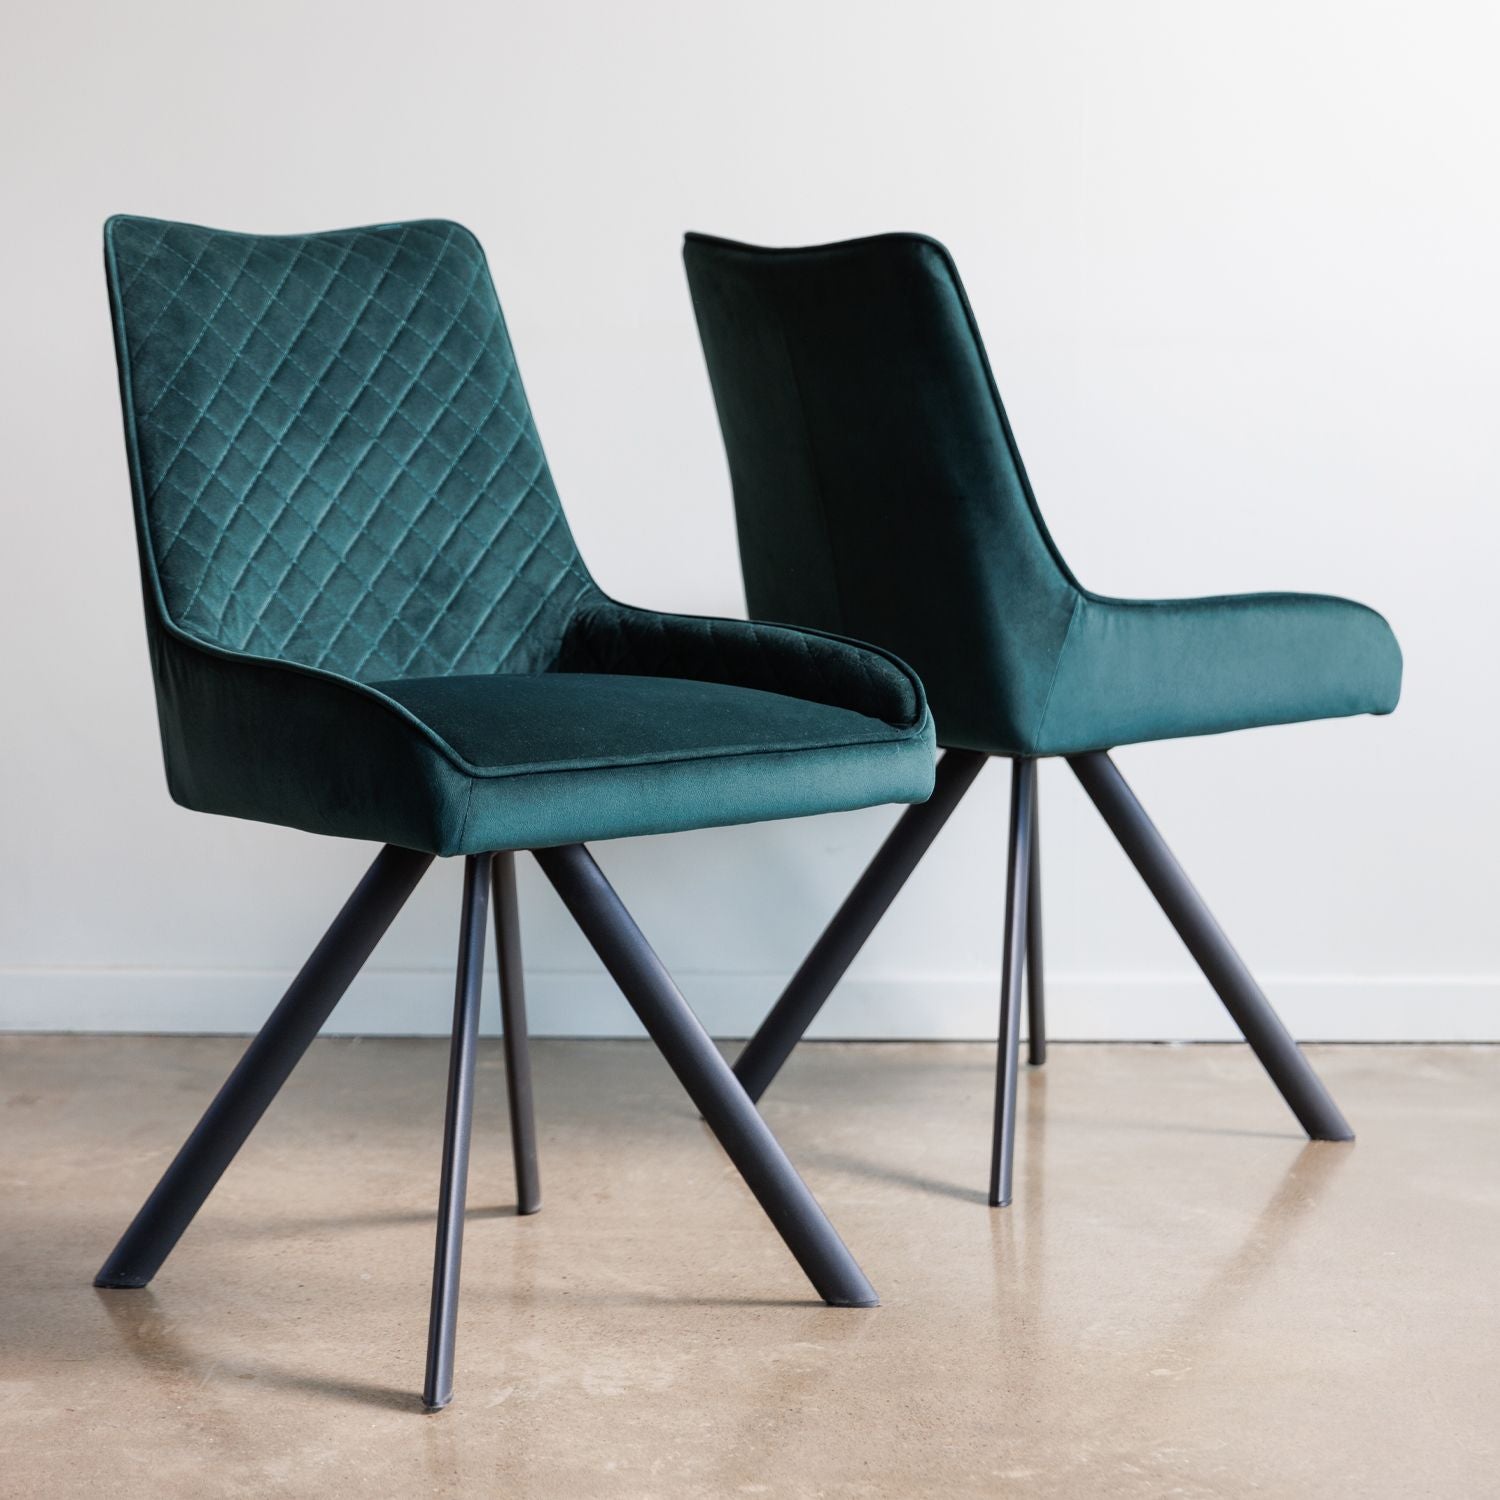 Bassett Dining Chair - Set Of 2 - Green